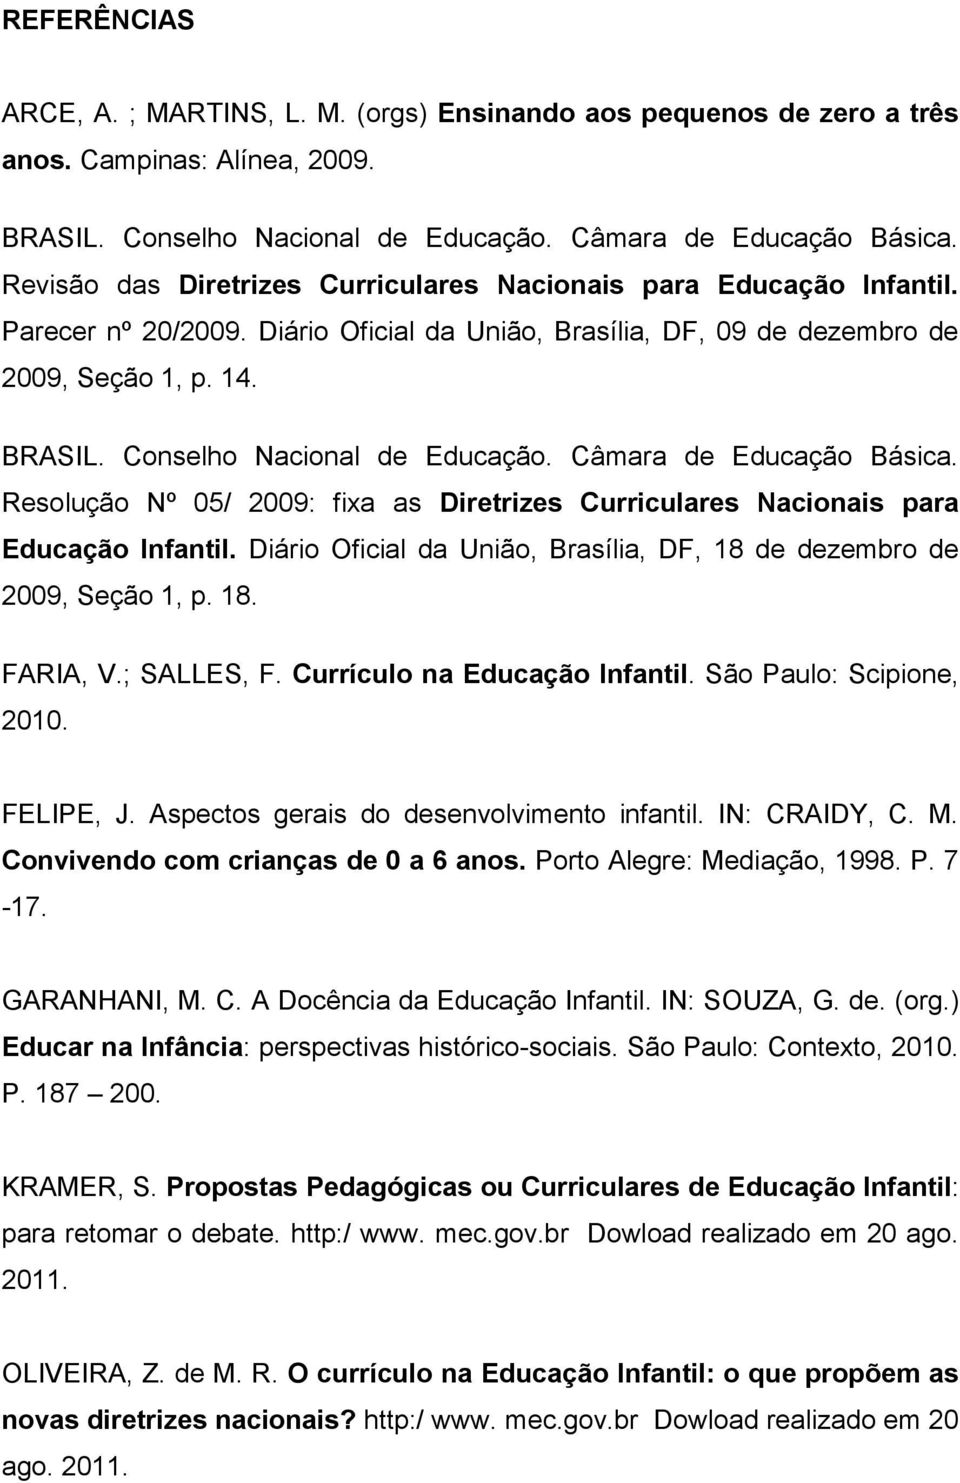 Conselho Nacional de Educação. Câmara de Educação Básica. Resolução Nº 05/ 2009: fixa as Diretrizes Curriculares Nacionais para Educação Infantil.